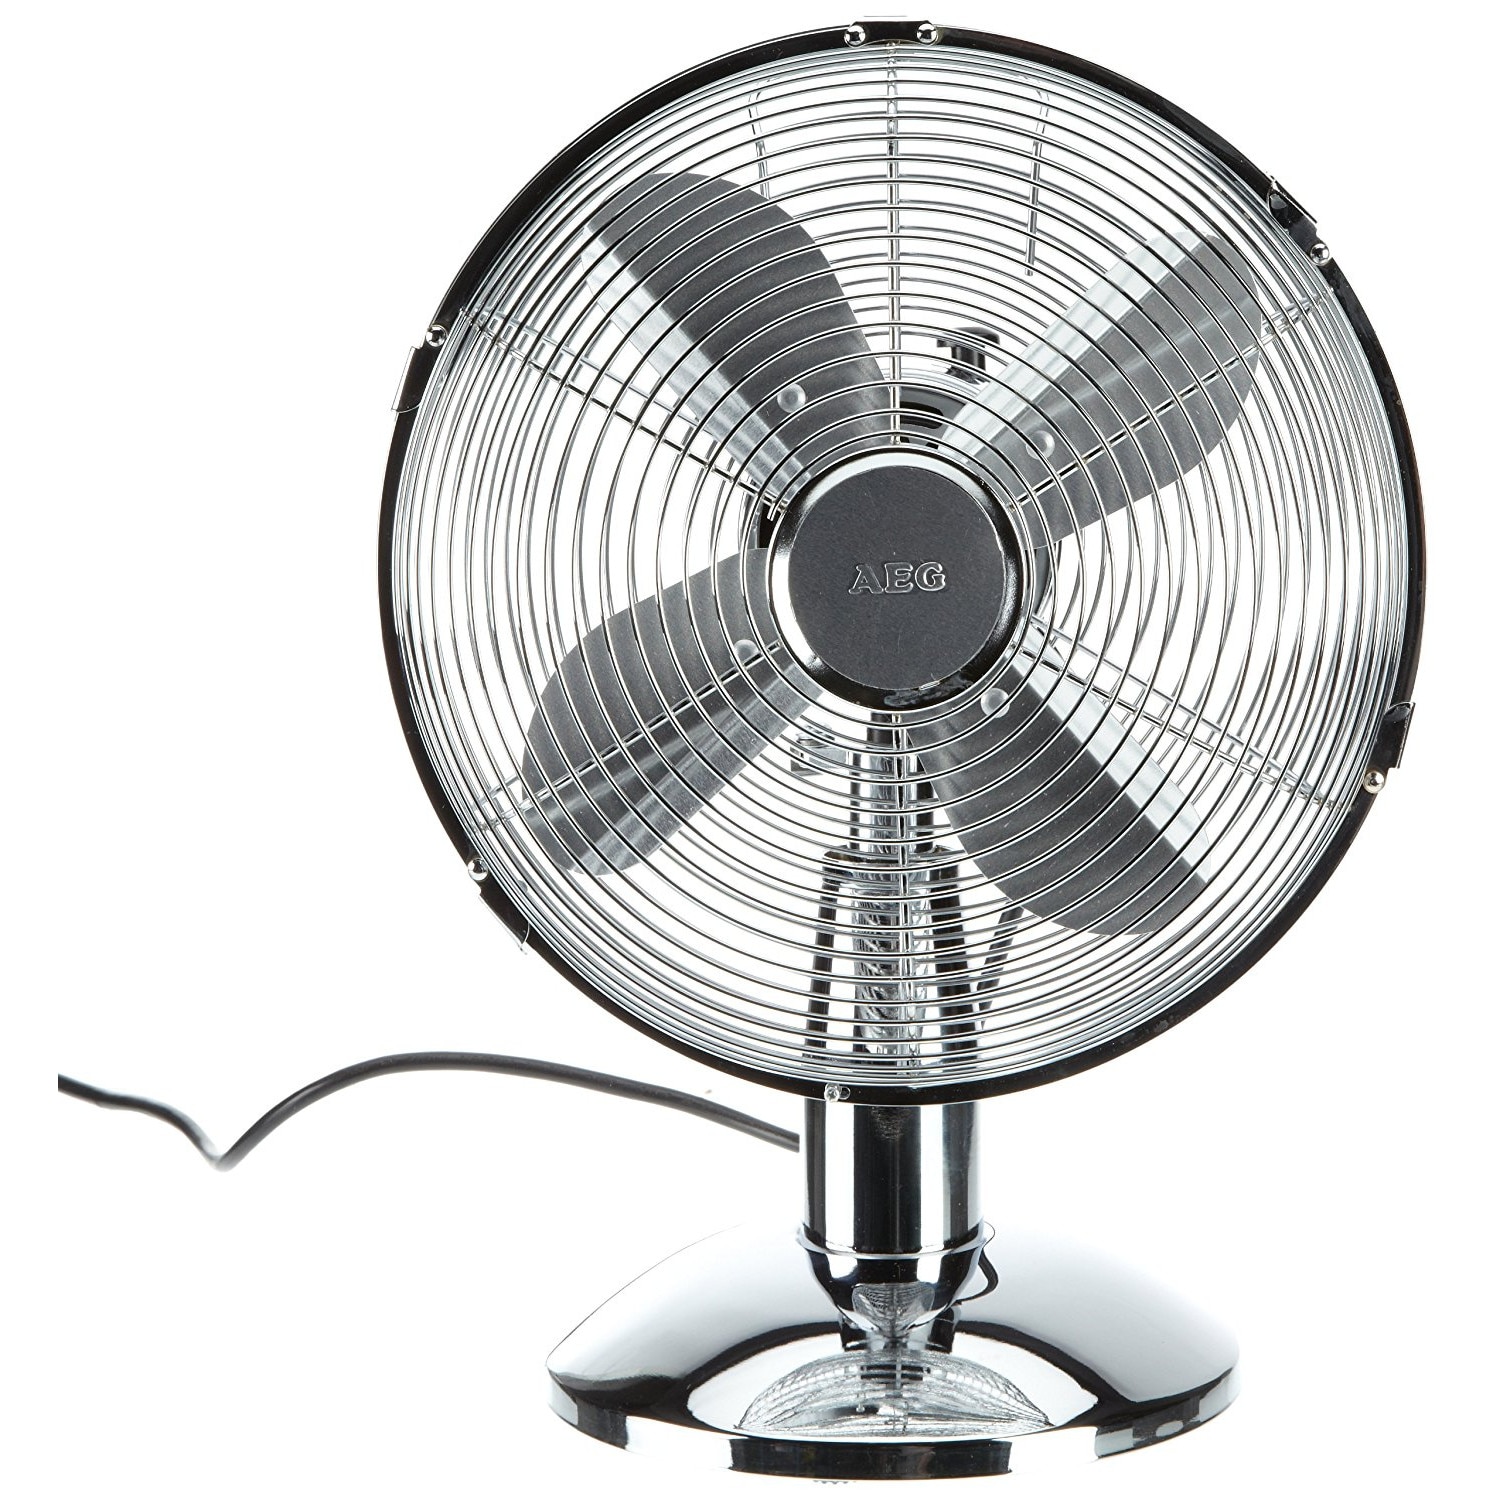 Купить мощный вентилятор. Вентилятор AEG 1908. Вентилятор настольный Holland 49607 вентилятор 3in1 16.3cm. Вентилятор Alpina Table Fan. Вентилятор настольный AEG.